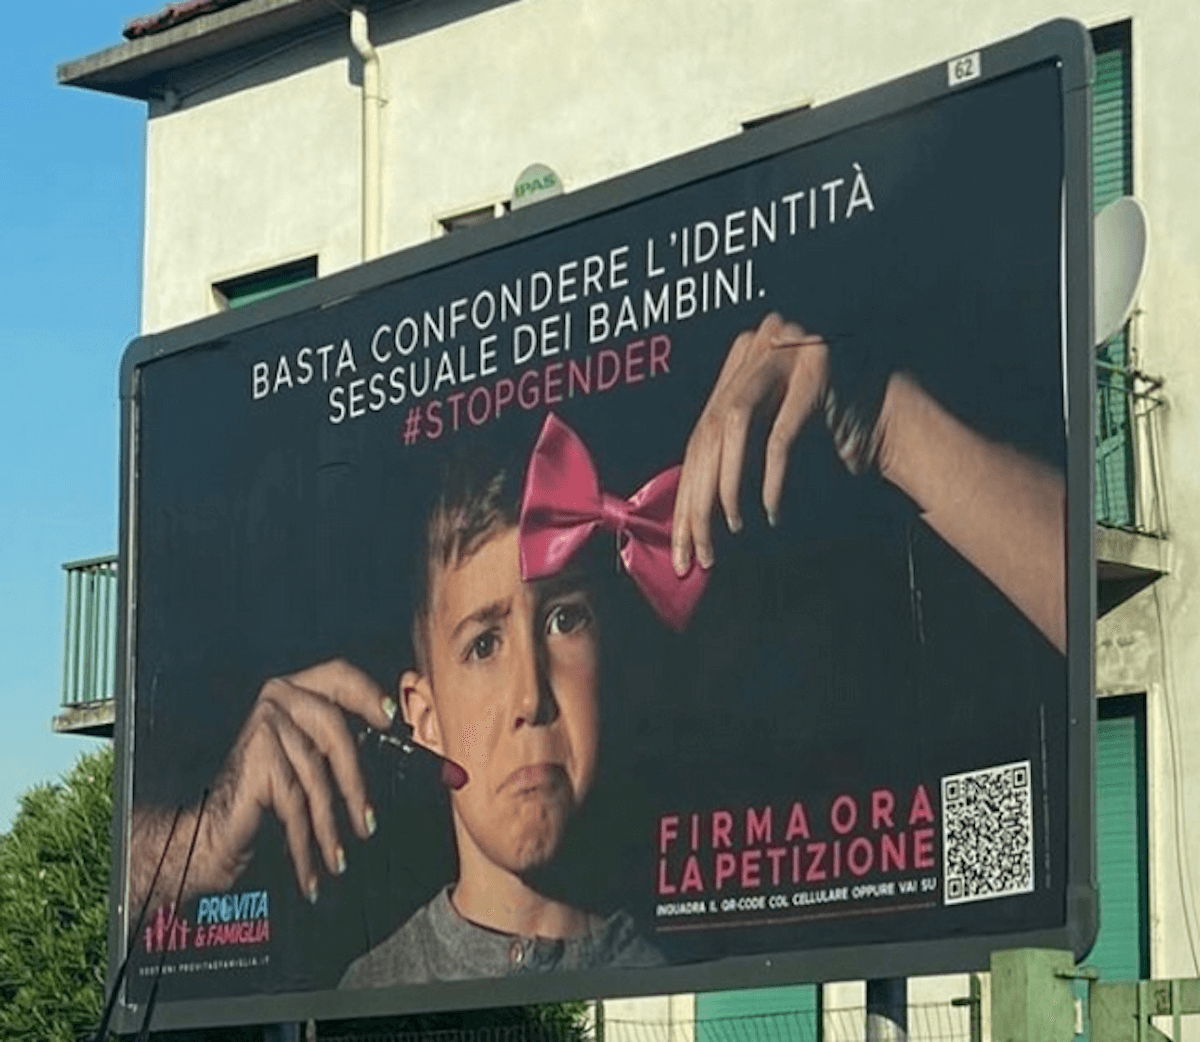 Pro Vita, nuovi aberranti manifesti contro la carriera alias a Roma: "Basta confondere l'identità sessuale dei bambini" - Pro Vita Famiglia Milano - Gay.it